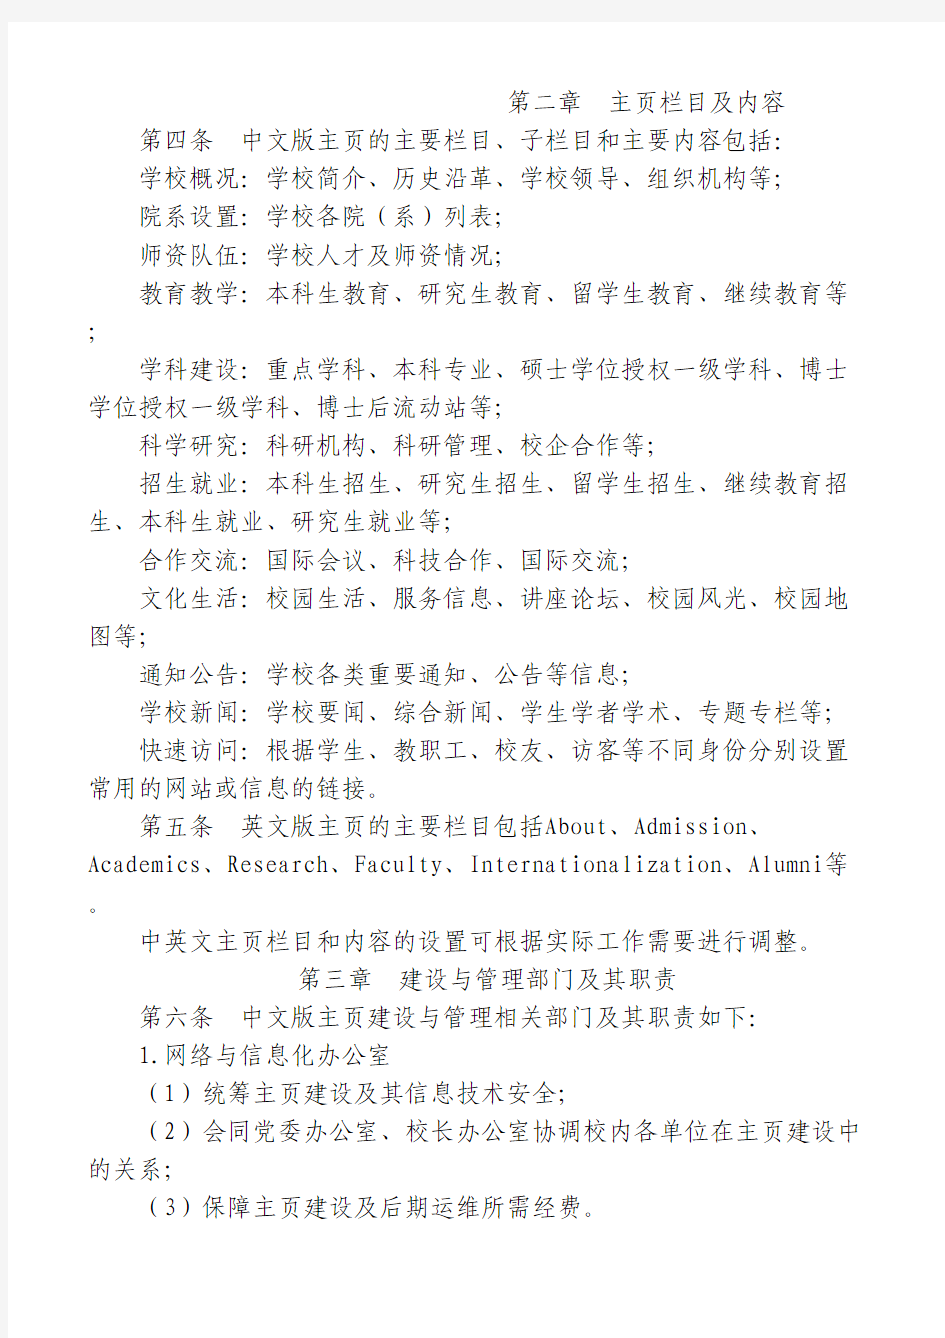 华中科技大学主页建设管理办法